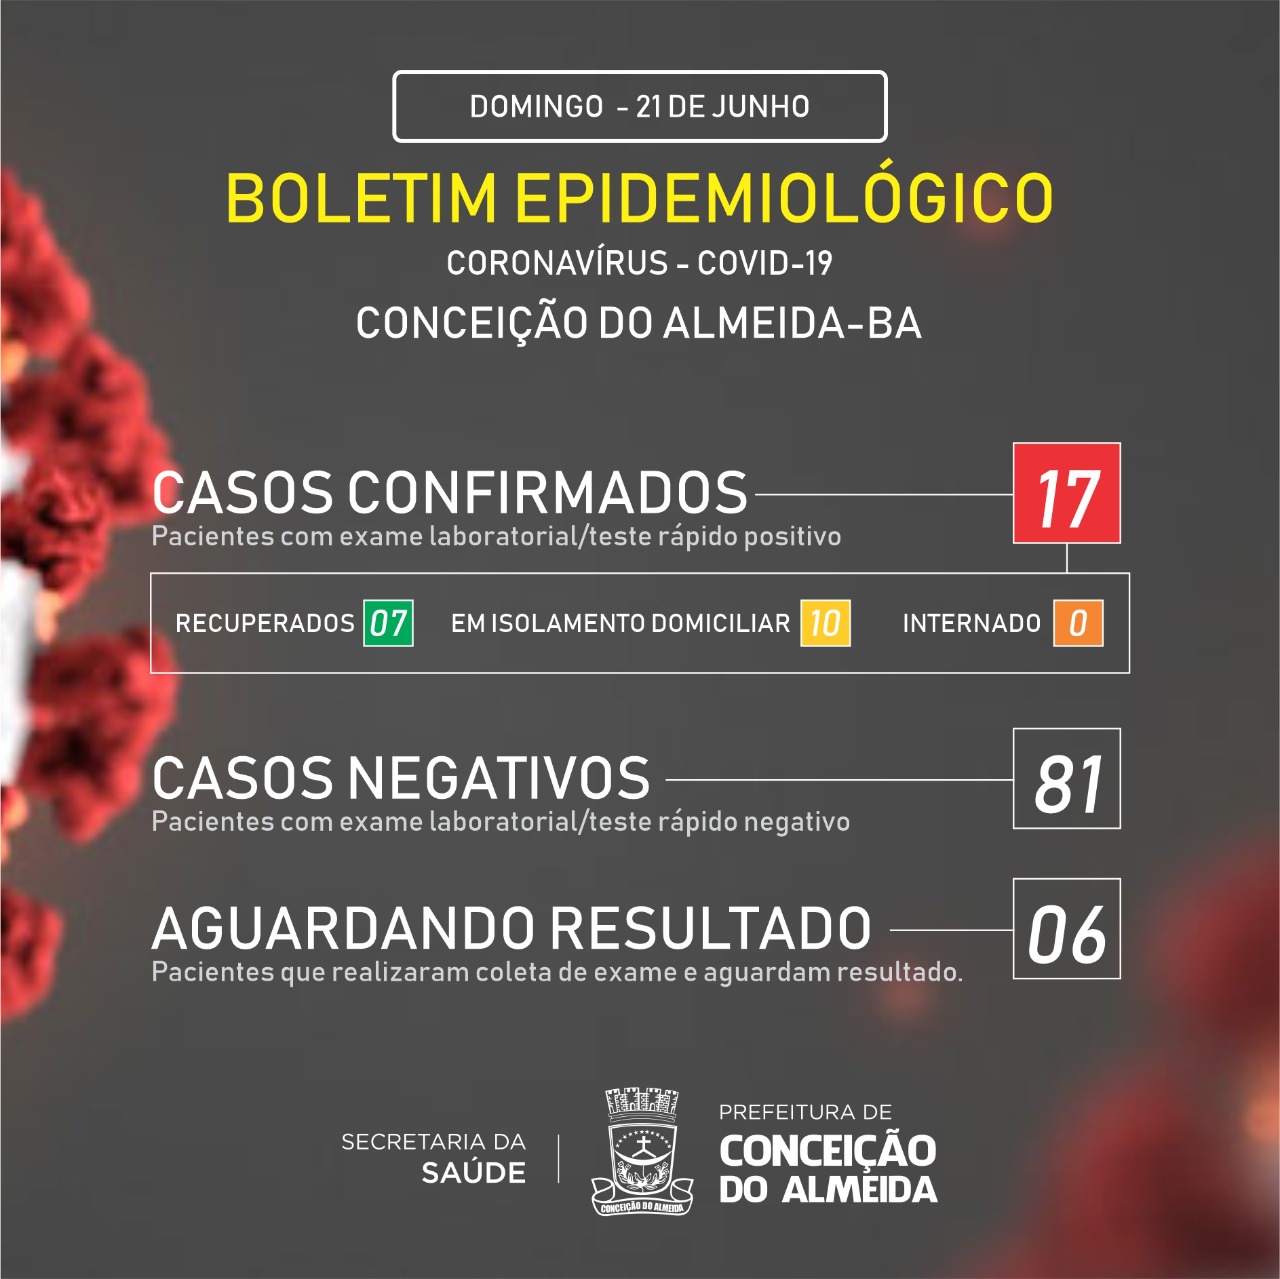 Conceição do Almeida registra 2 novos casos de Covid-19 e registra 17 pacientes infectados